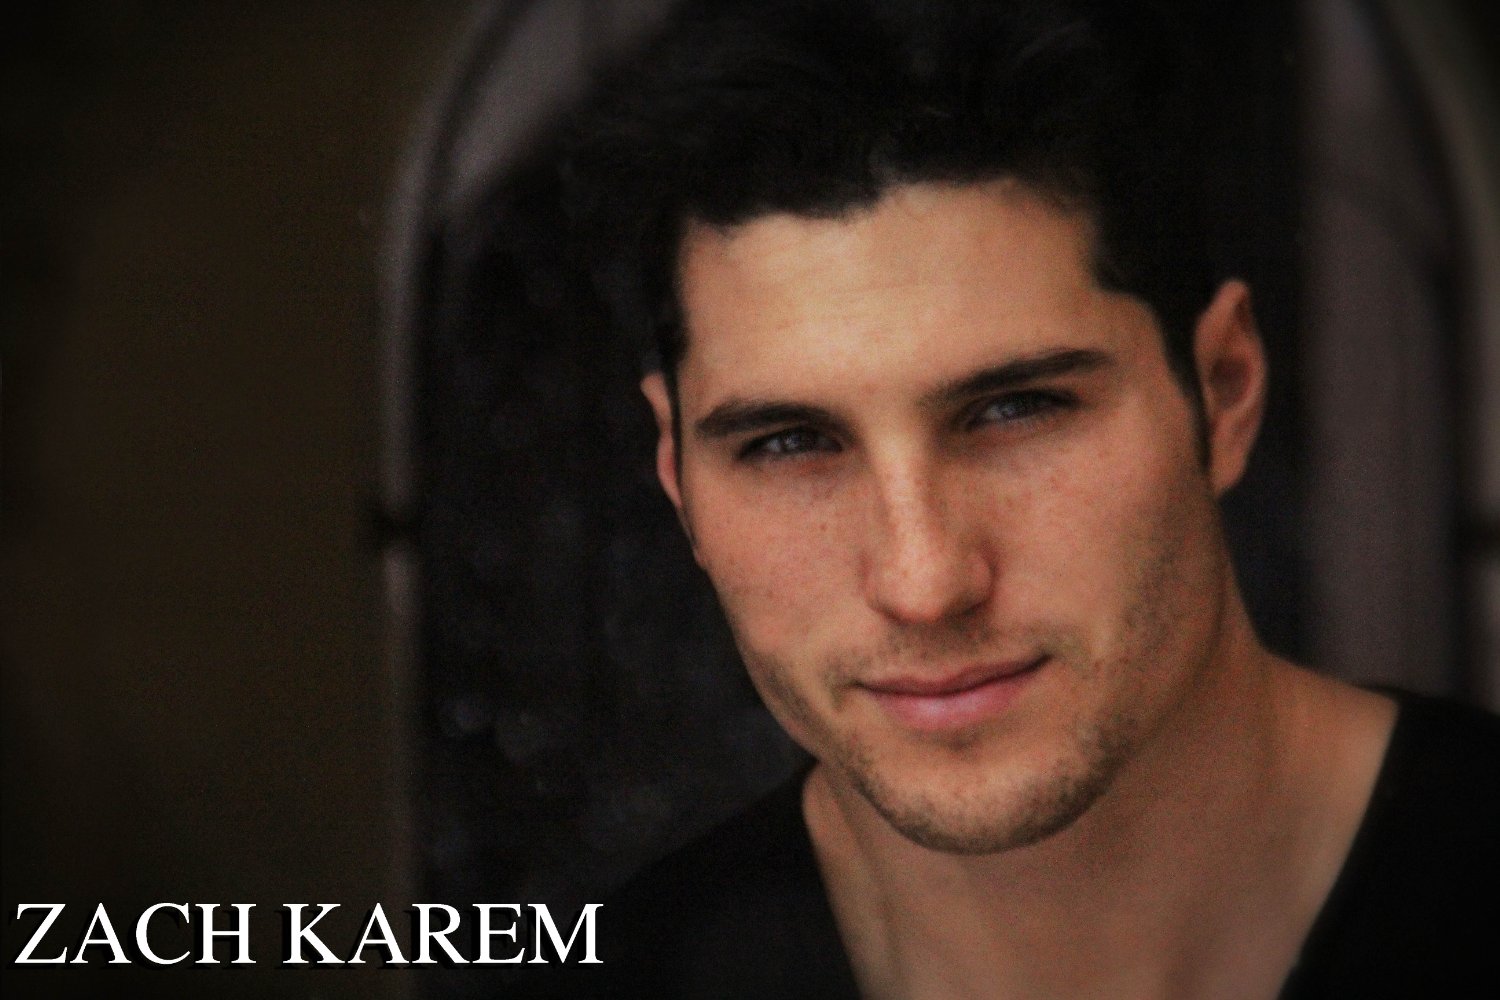 Zach Karem